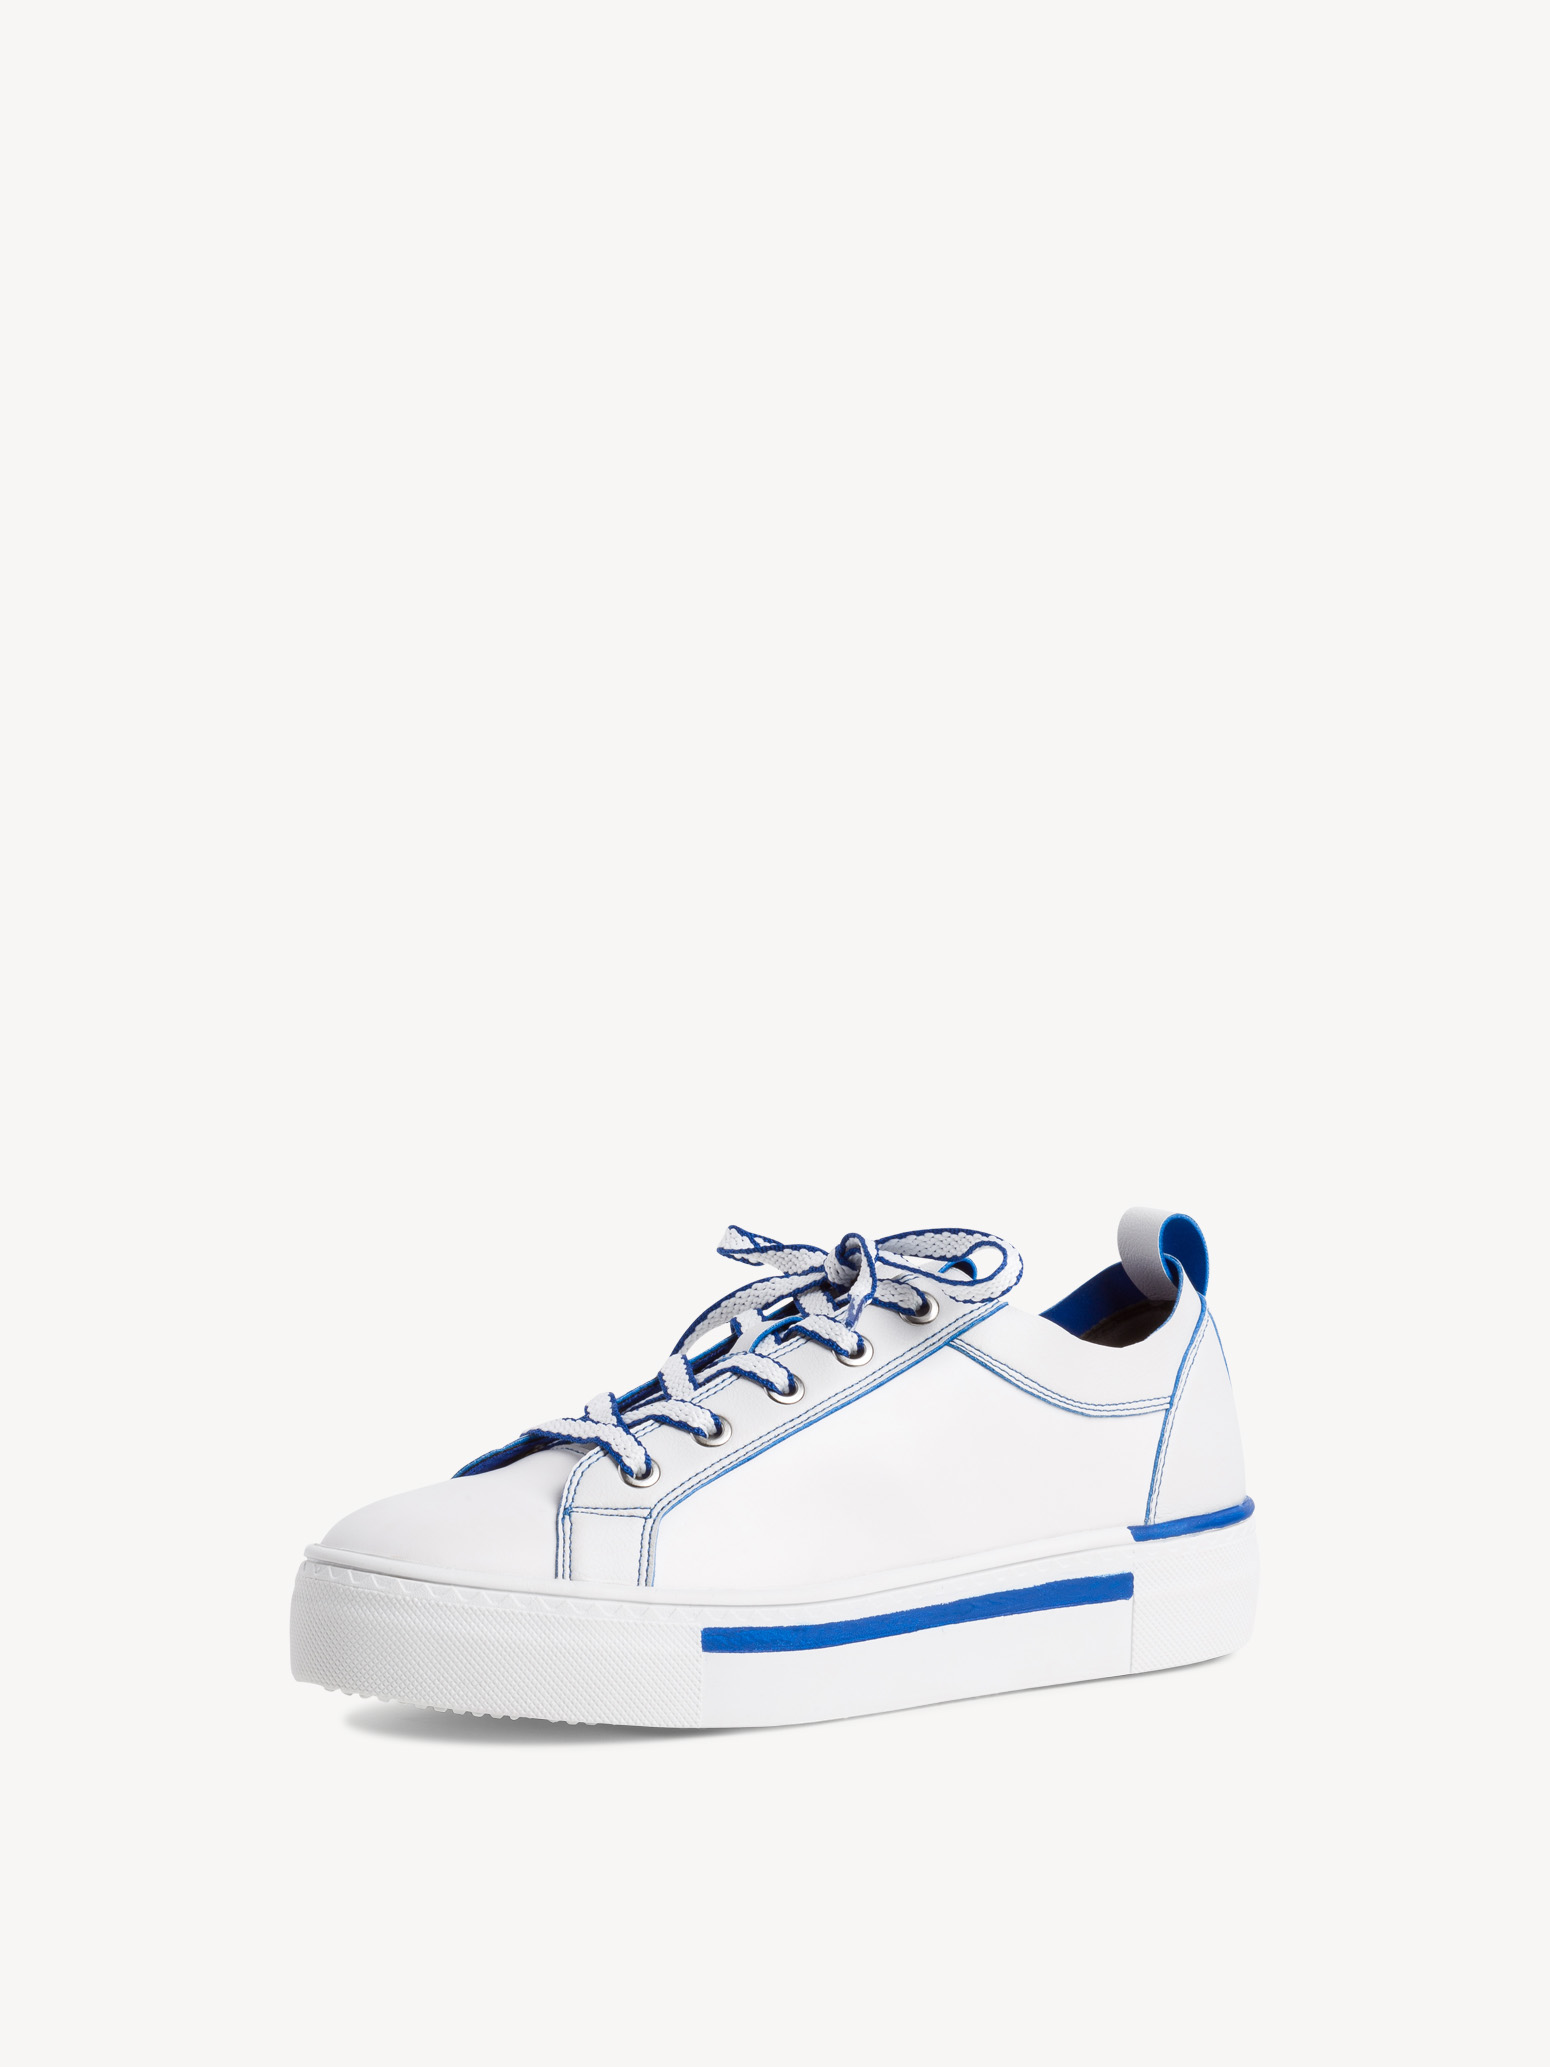 Ботинки на шнурках женские (синий/белый) - изображение №1